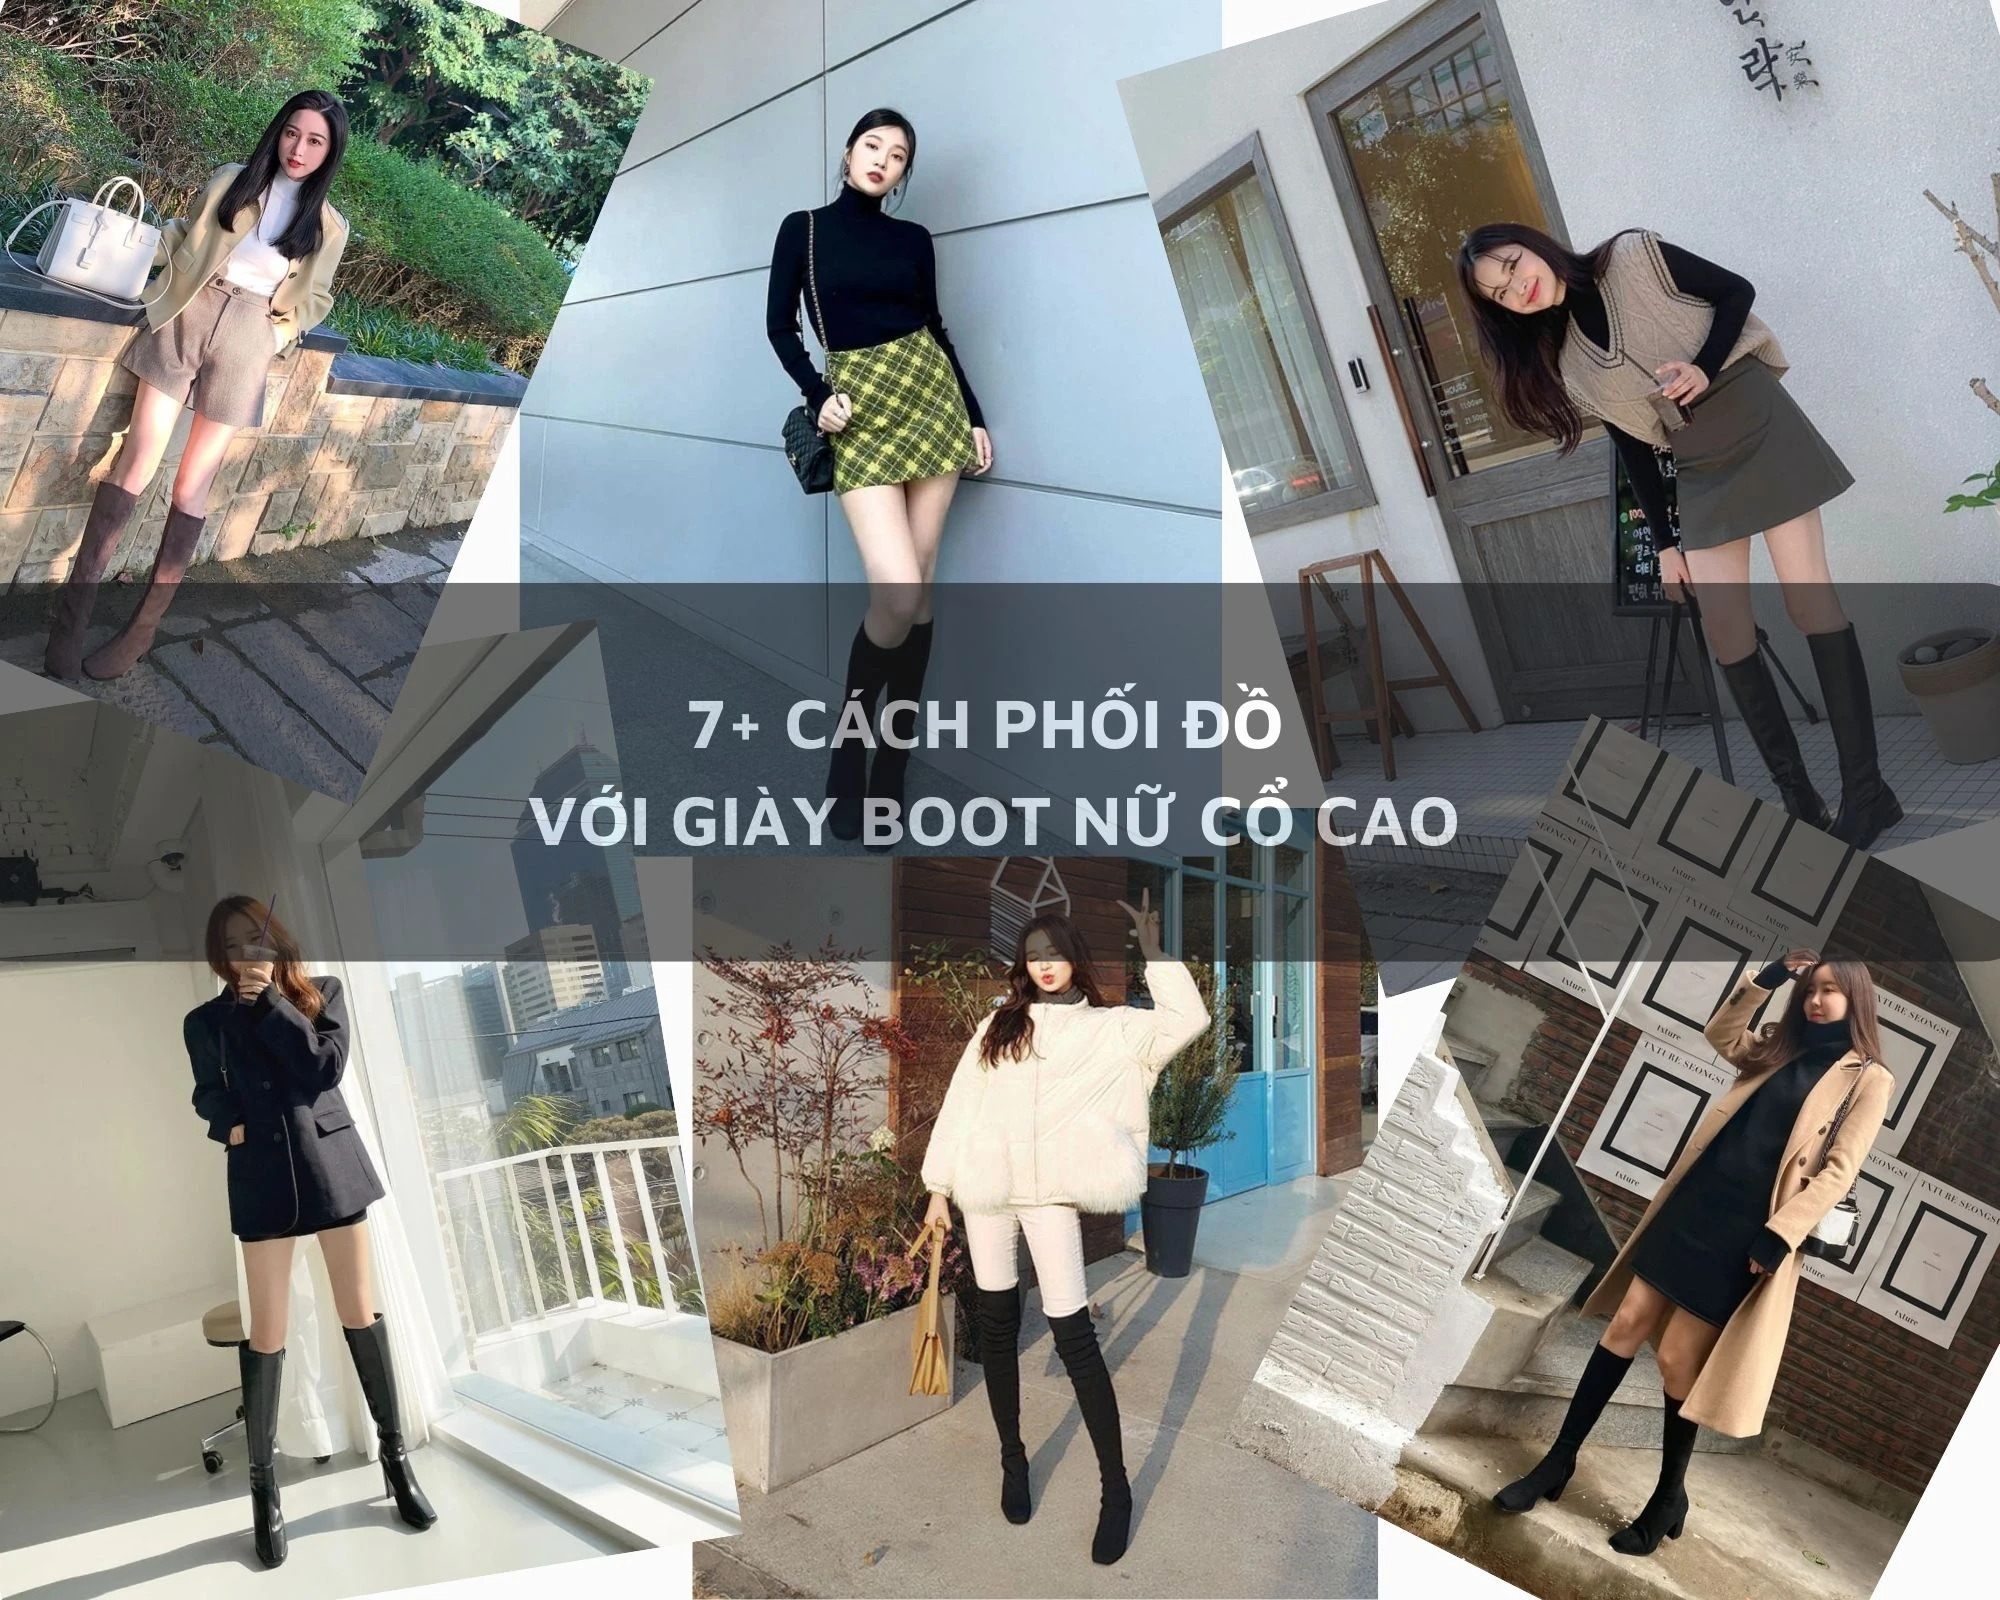 Cách phối đồ với giày boot nữ cổ cao thời thượng - Shopee Blog